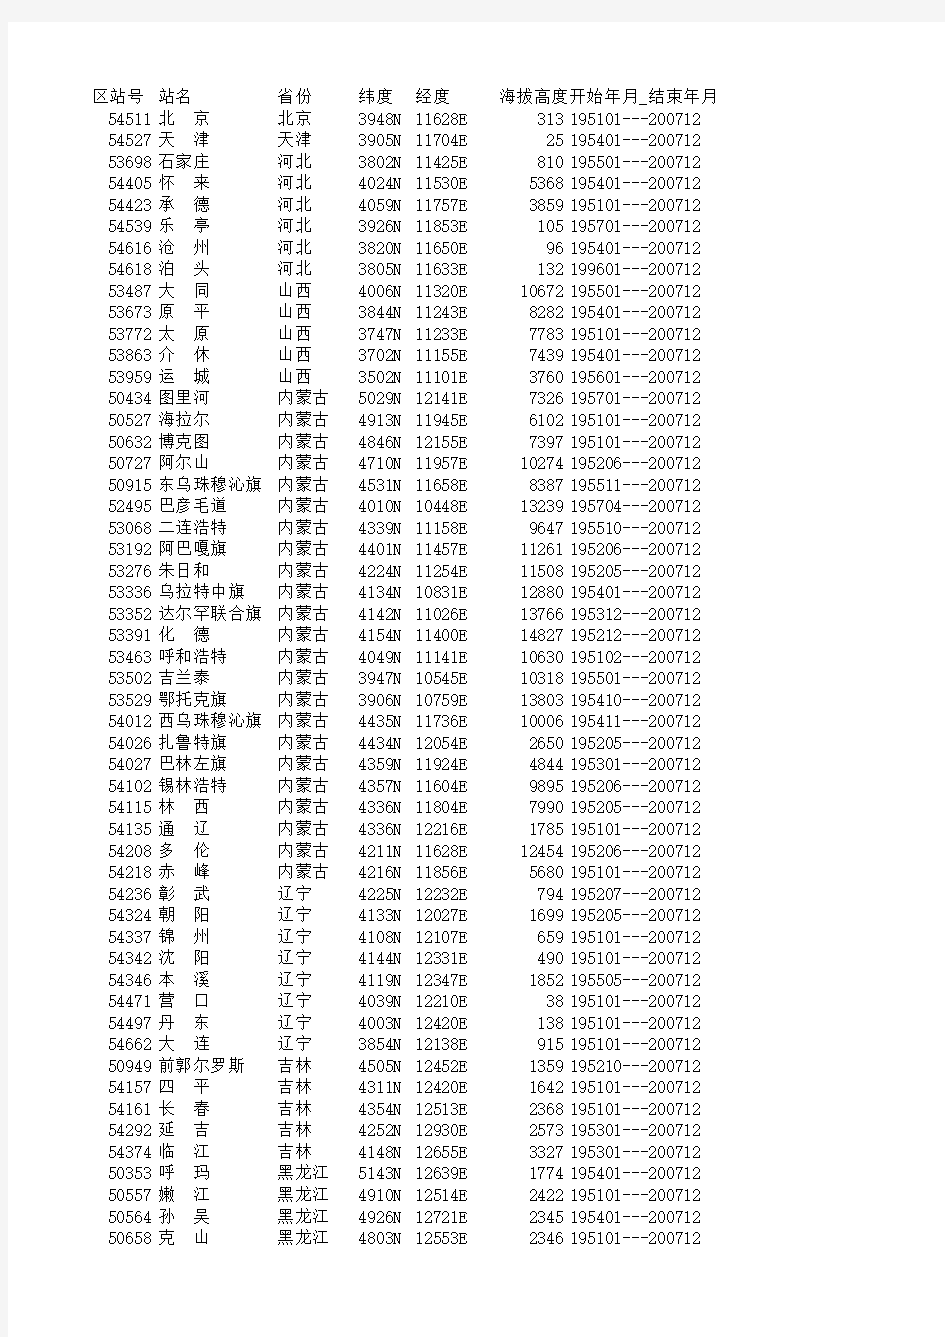 中国地面气候资料国际交换站数据集台站信息